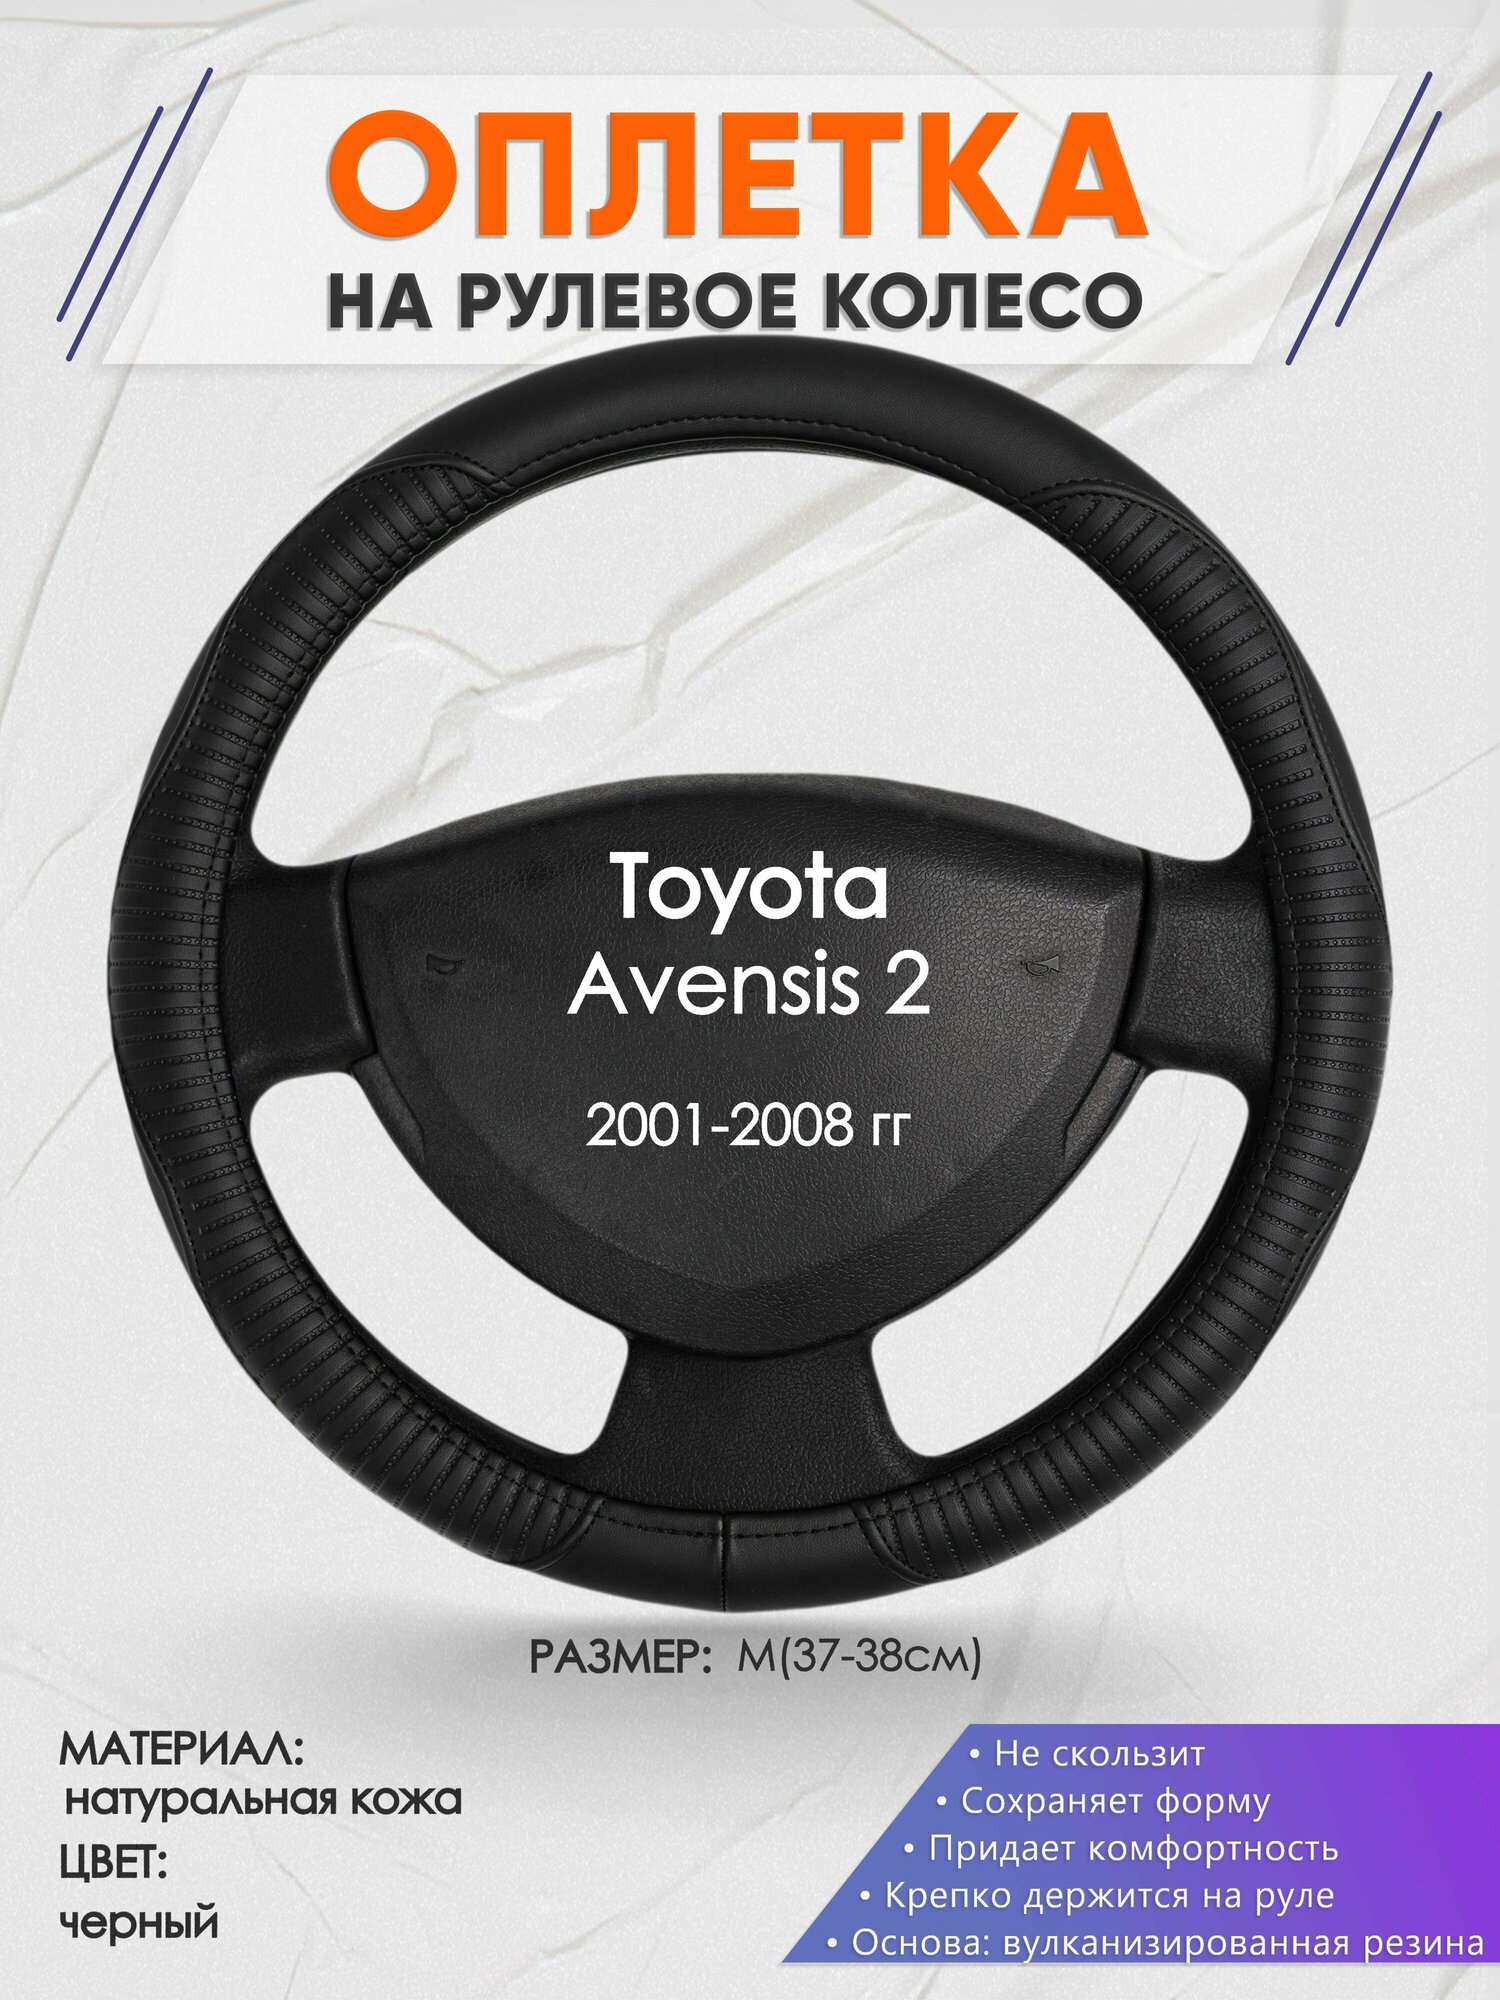 Оплетка на руль для Toyota Avensis 2(Тойота Авенсис 2) 2001-2008, M(37-38см), Натуральная кожа 22